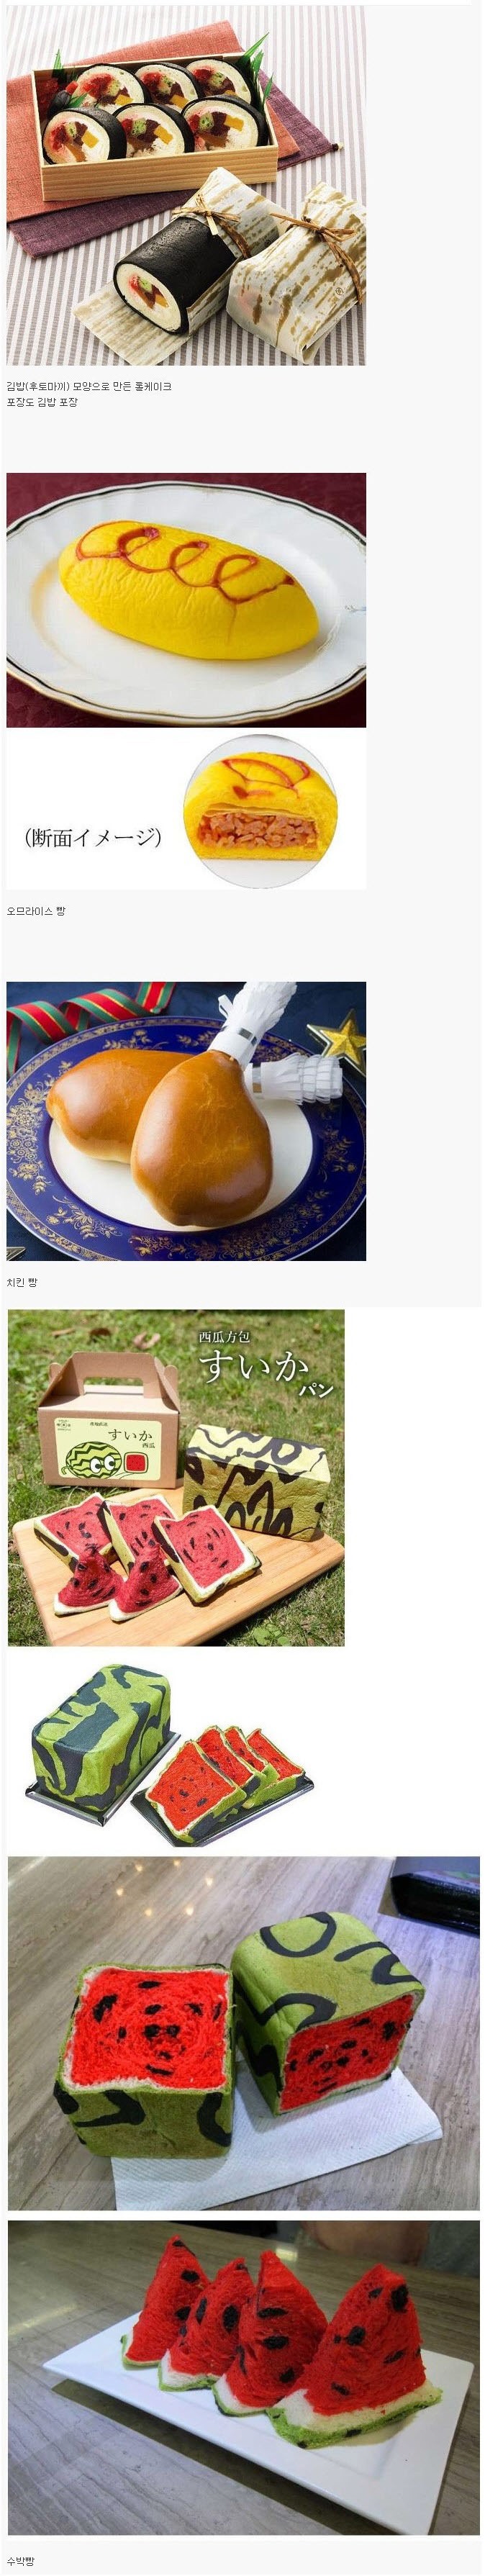 일본의 독특한 모양의 빵들.jpg